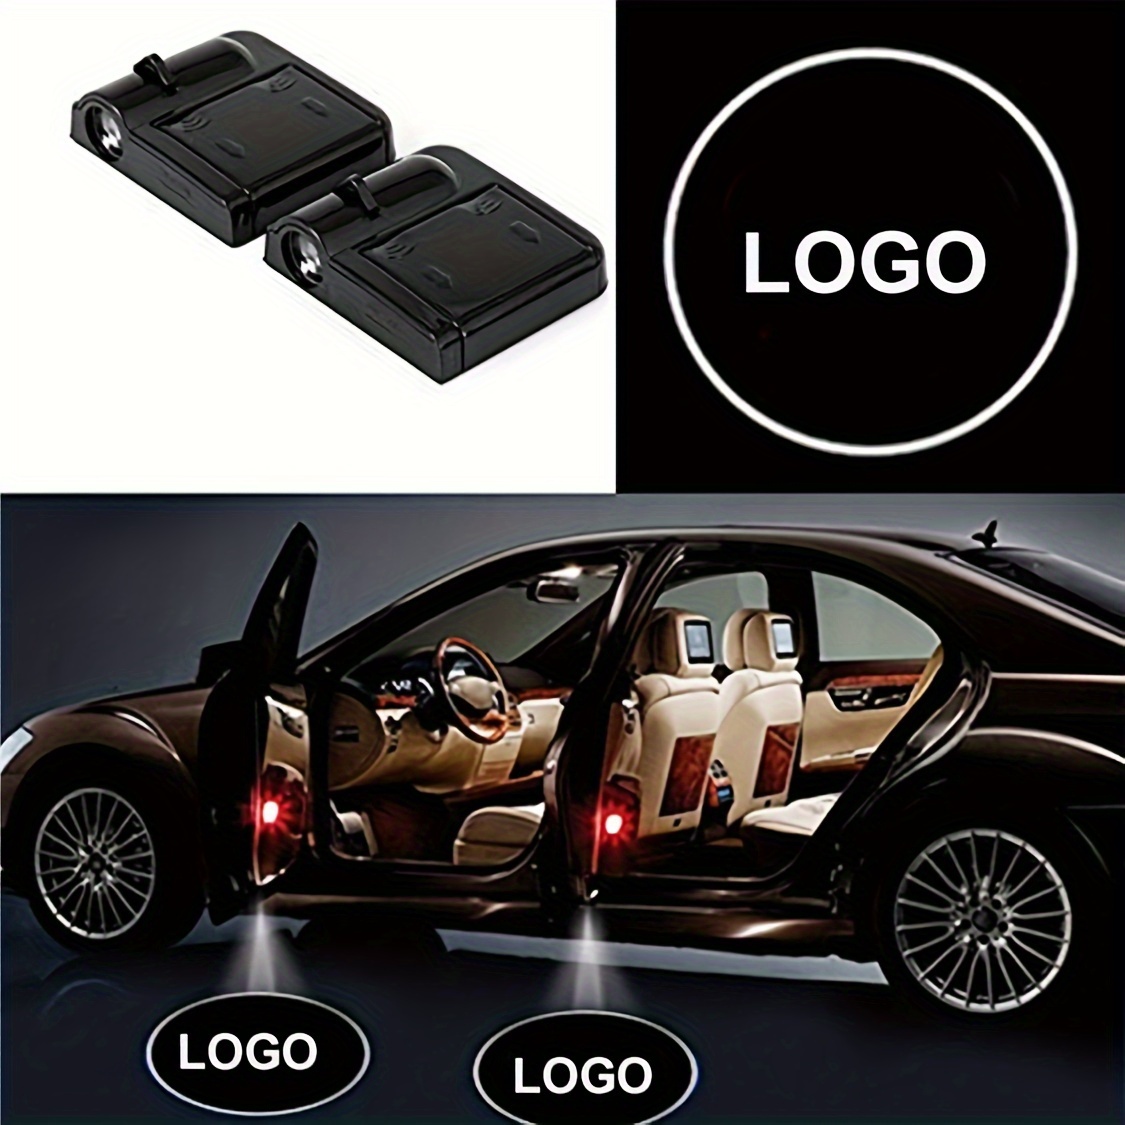 4 Stücke Auto Tür Led Logo Projektor Licht Für Bmw X1 X2 X3 X4 X5 X6 X7e84  E83 E70 E71 E72 E90, Willkommenslicht, Dekorative Autotür Beleuchtung, aktuelle Trends, günstig kaufen